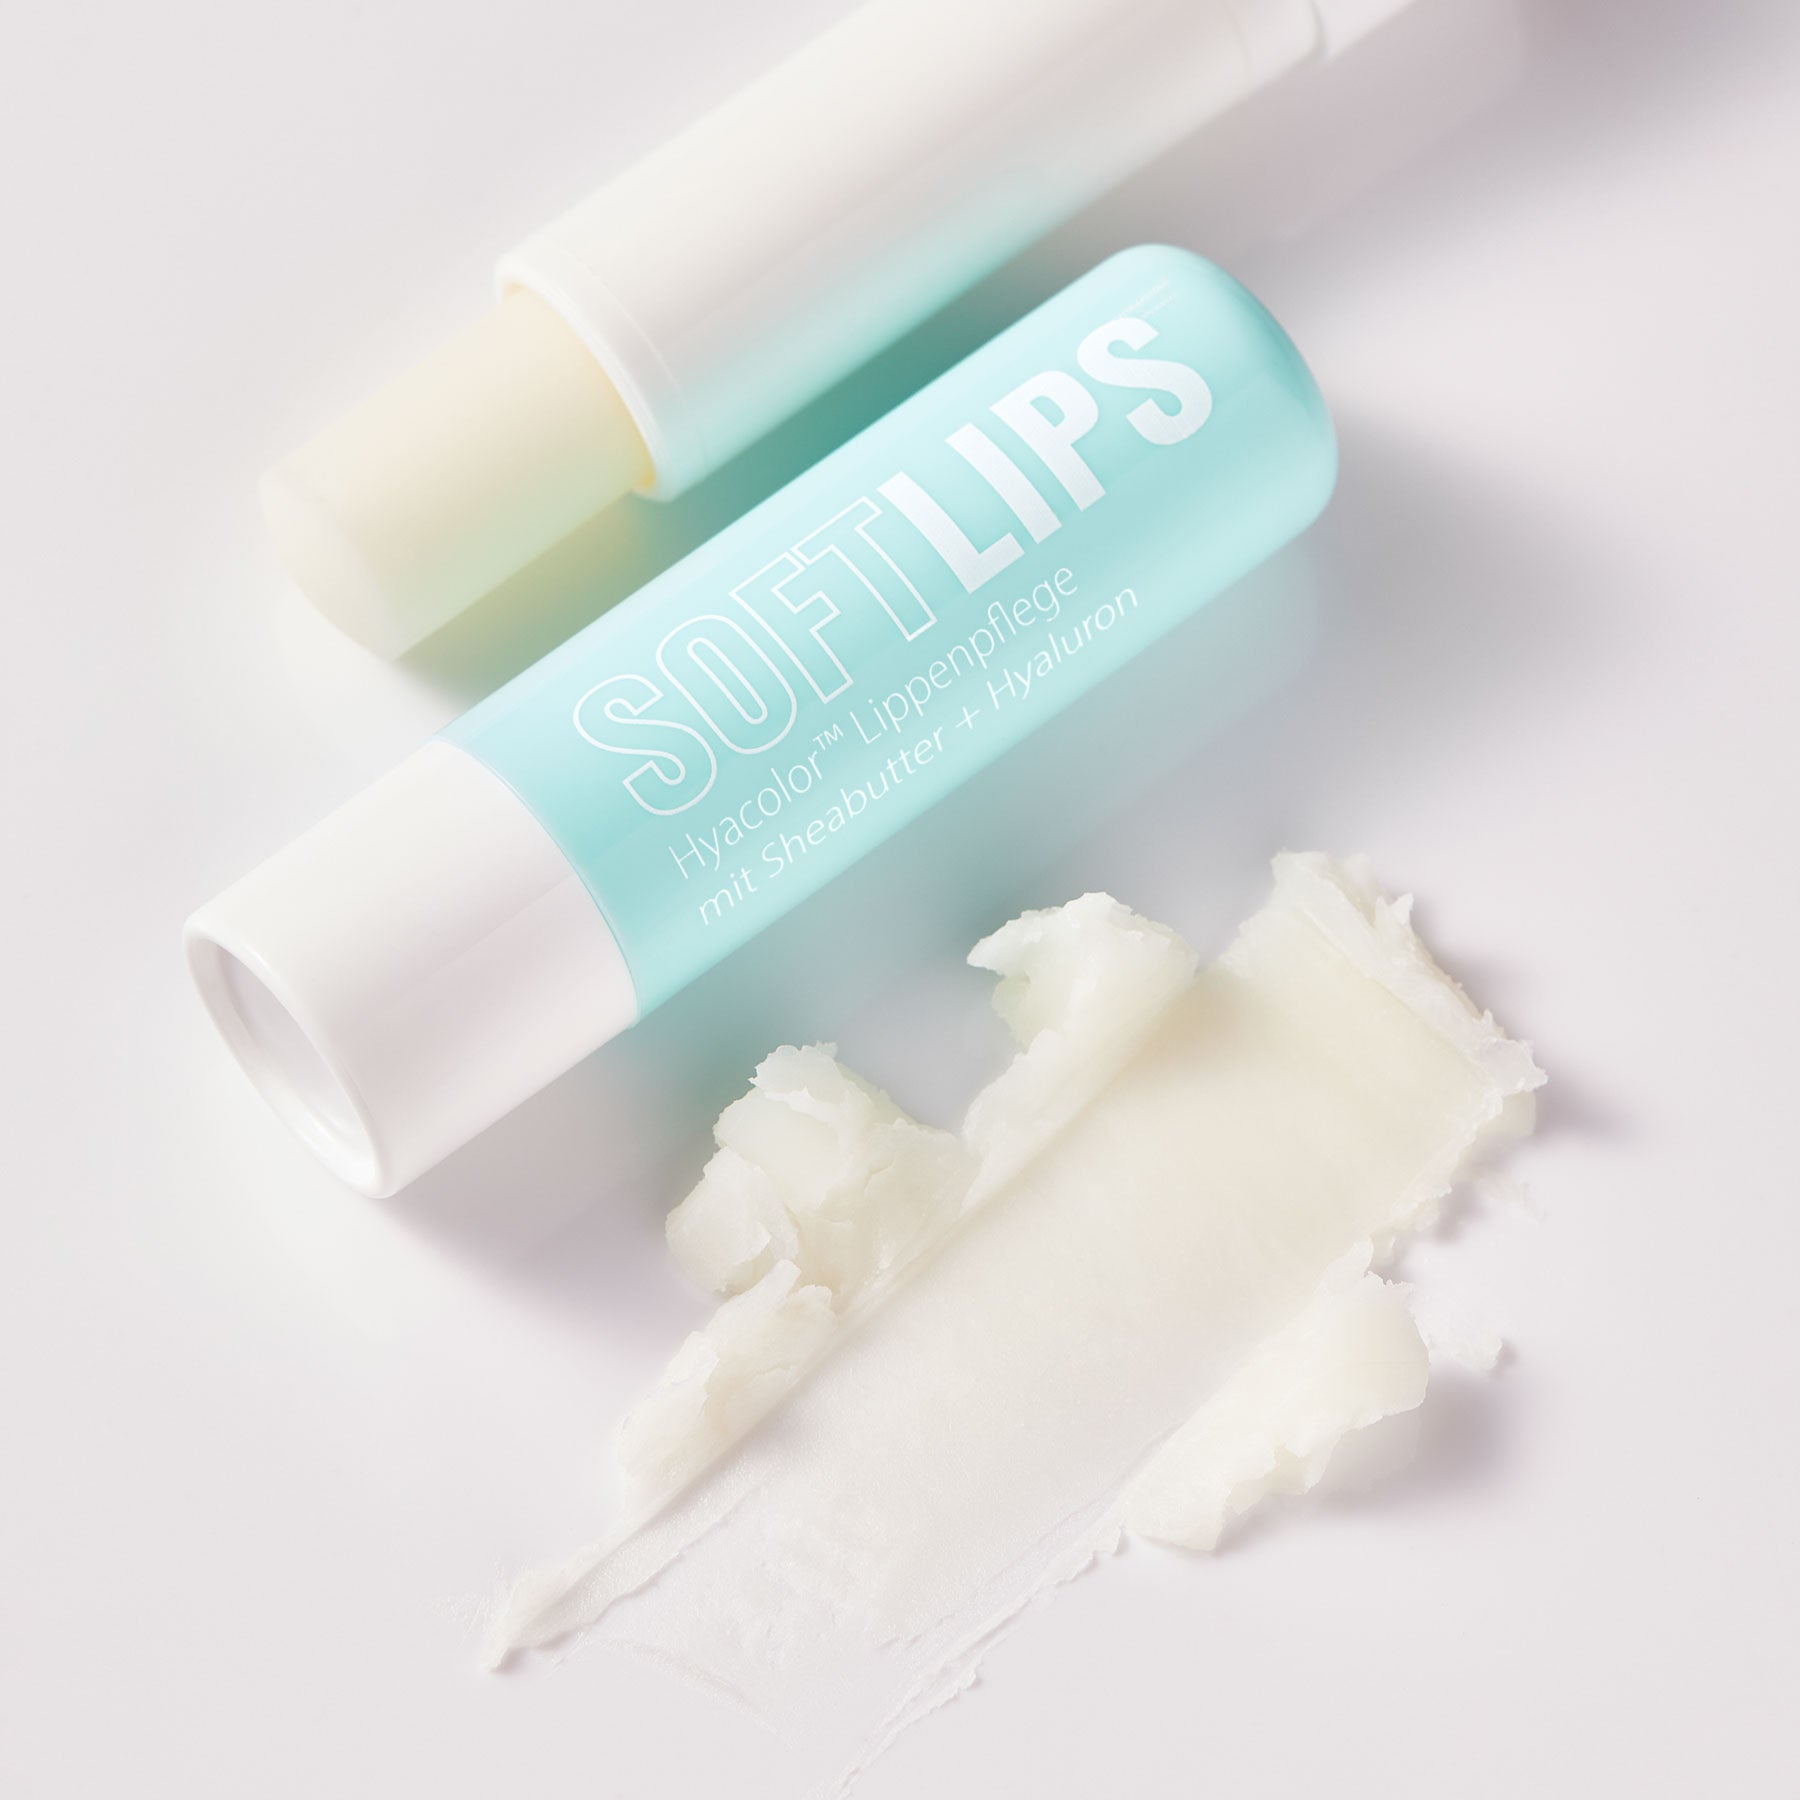 Dr. Massing SoftLips Lippenpflege mit Hyaluron Lippenpflege mit Sheabutter Detailansicht Textur auf weißen Hintergrund petrolfarbige Verpackung